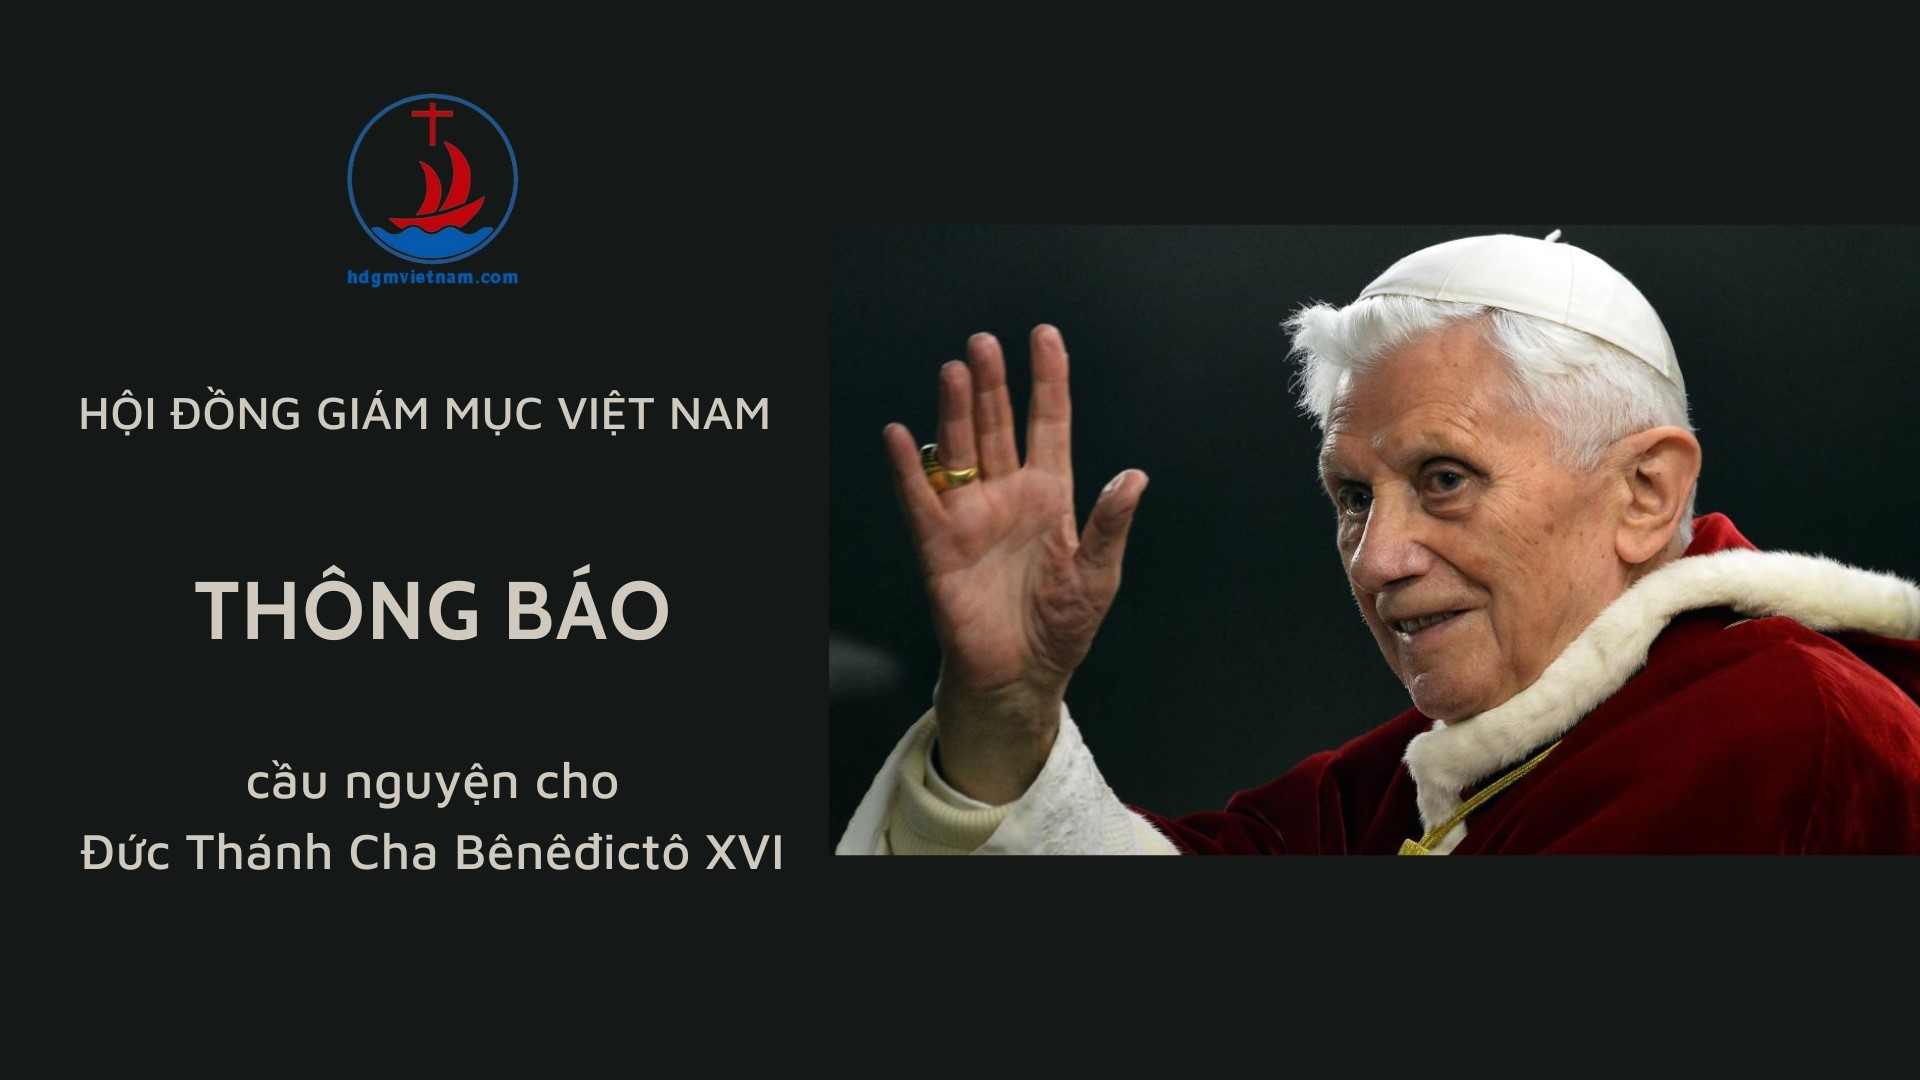 Hội đồng Giám mục Việt Nam thông báo cầu nguyện cho Đức Thánh Cha Bênêđictô XVI